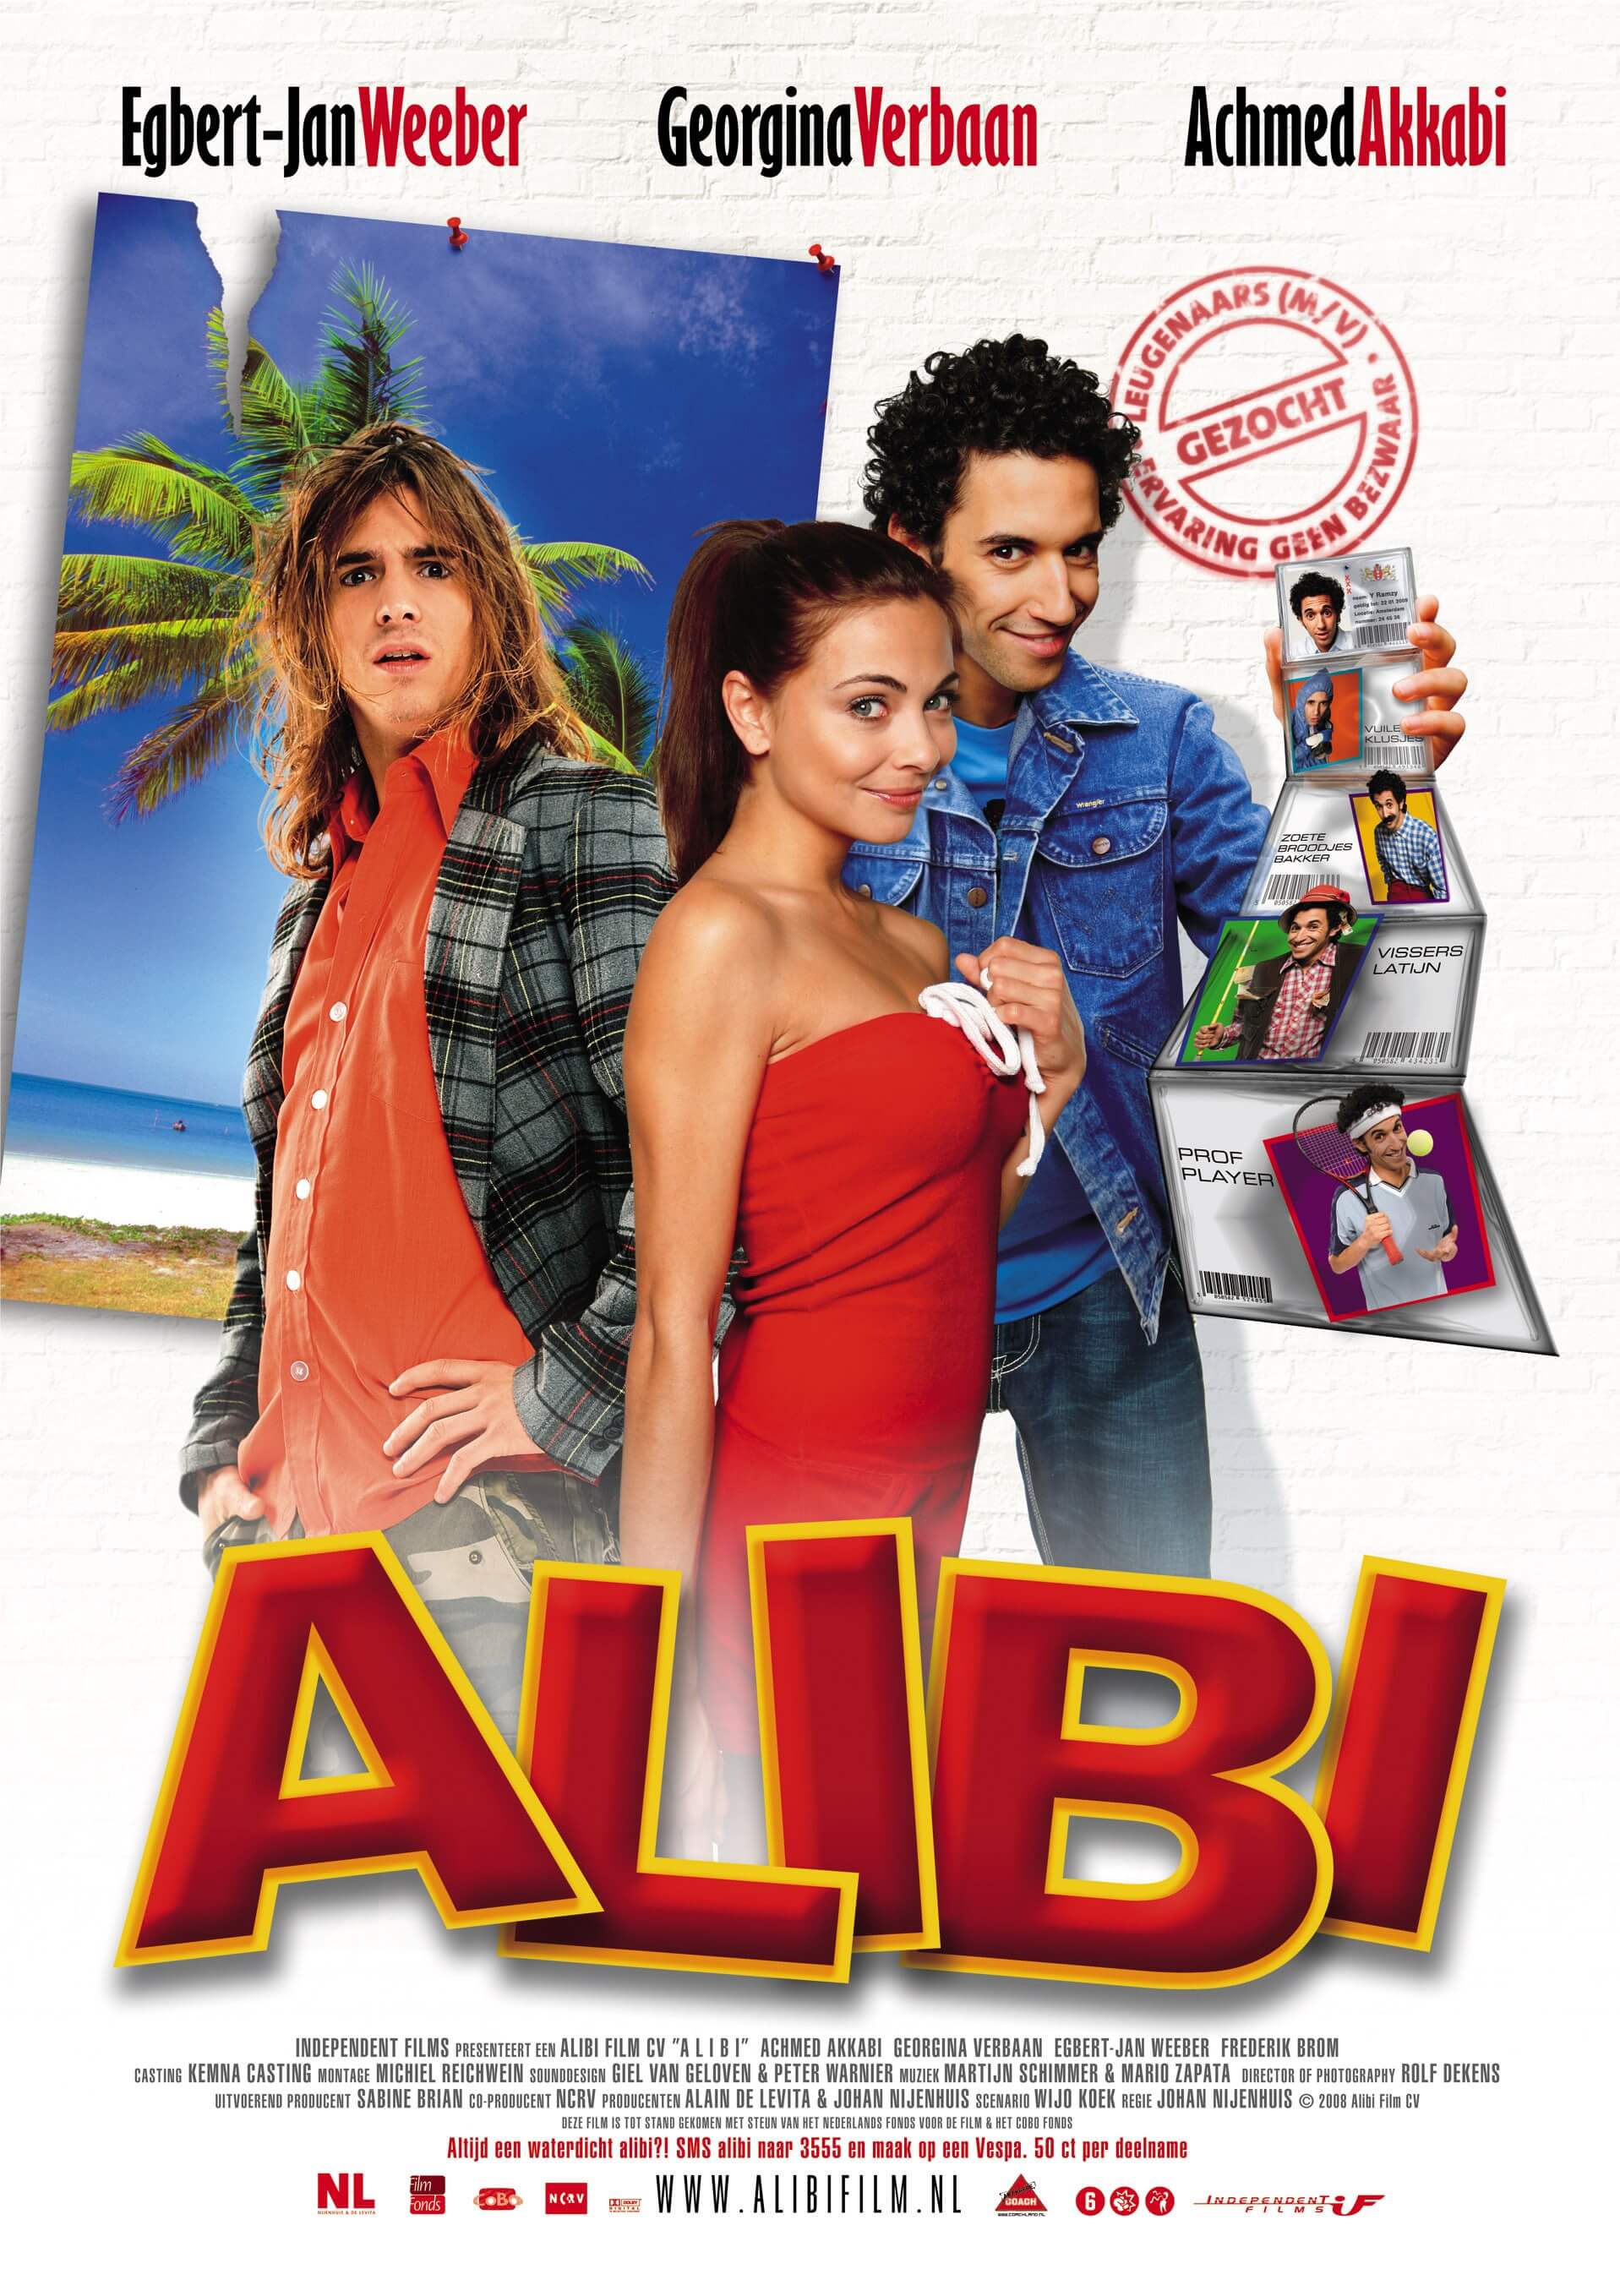 alibi-independent-films